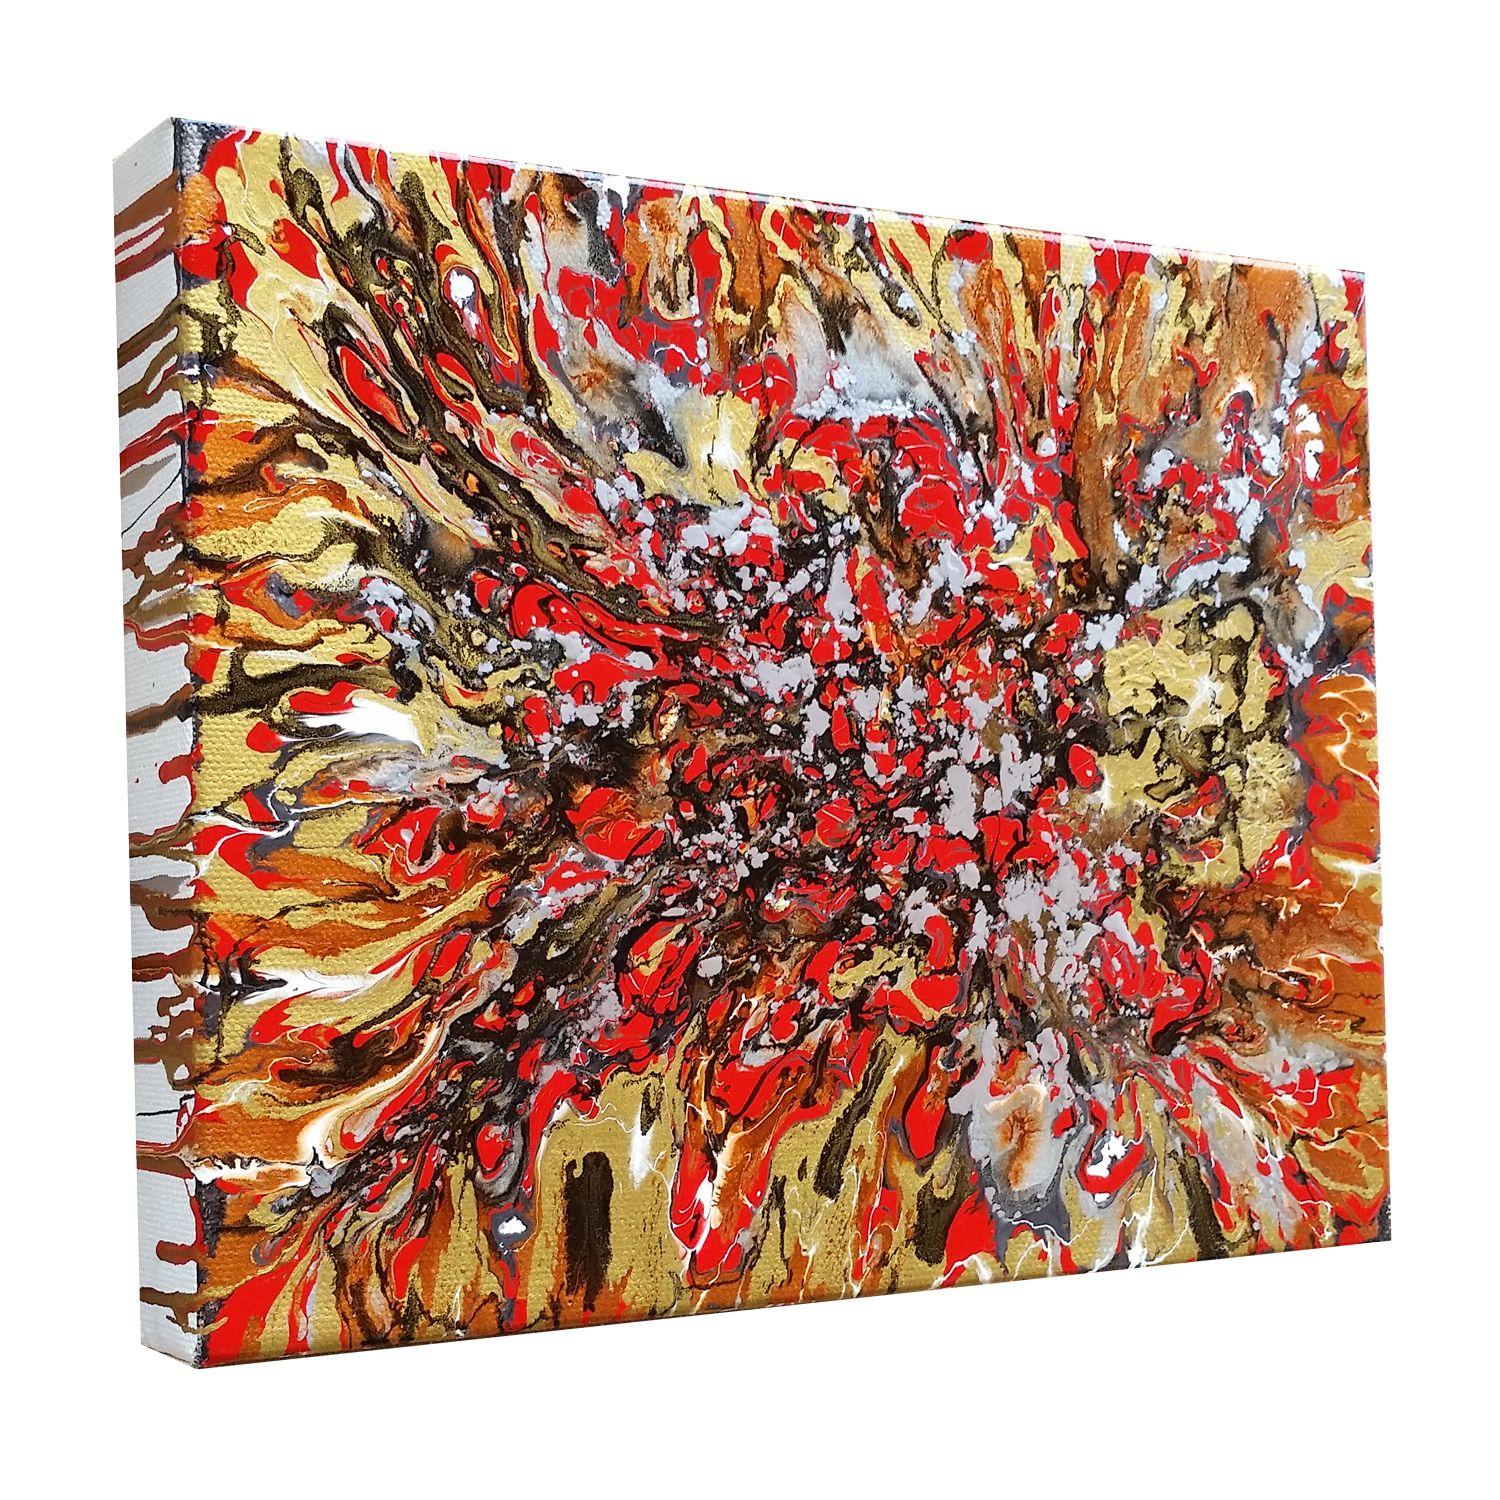 Red River, Gemälde, Öl auf Leinwand (Abstrakter Expressionismus), Painting, von Alexandra Romano